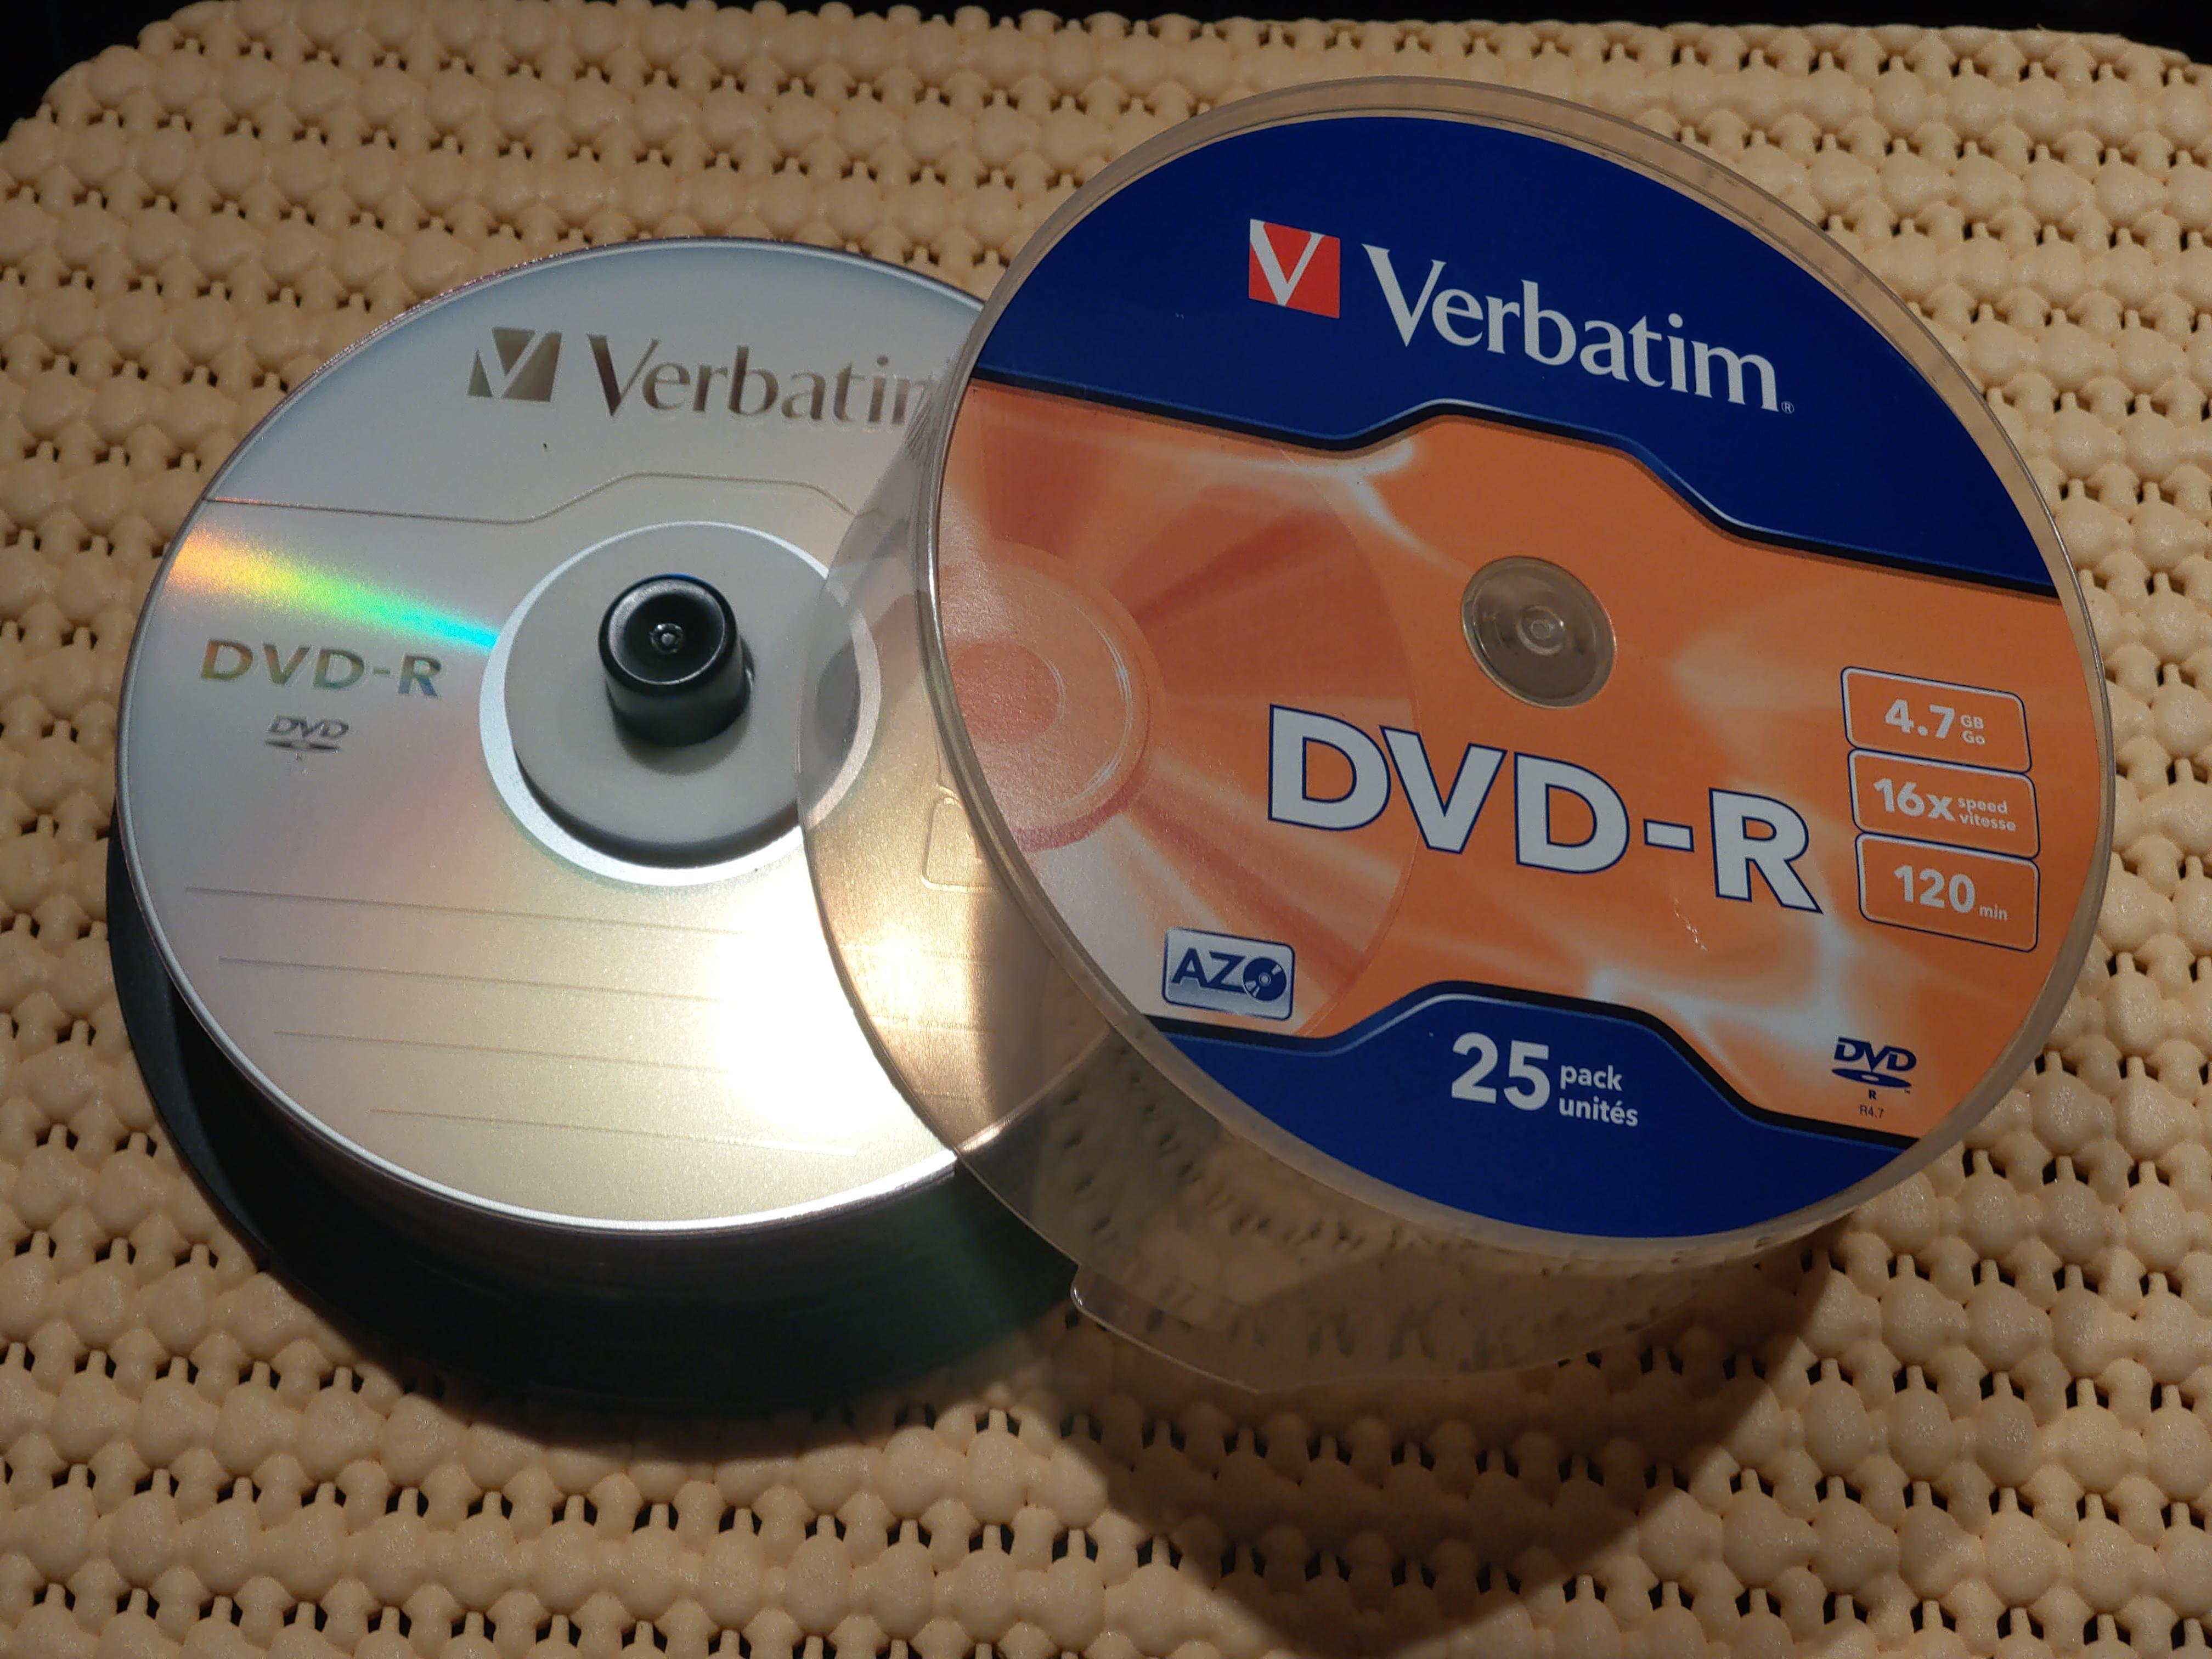 troc de troc donne un lot de 22 dvd-r verbatim (4.7 gb - 120 mn) image 2